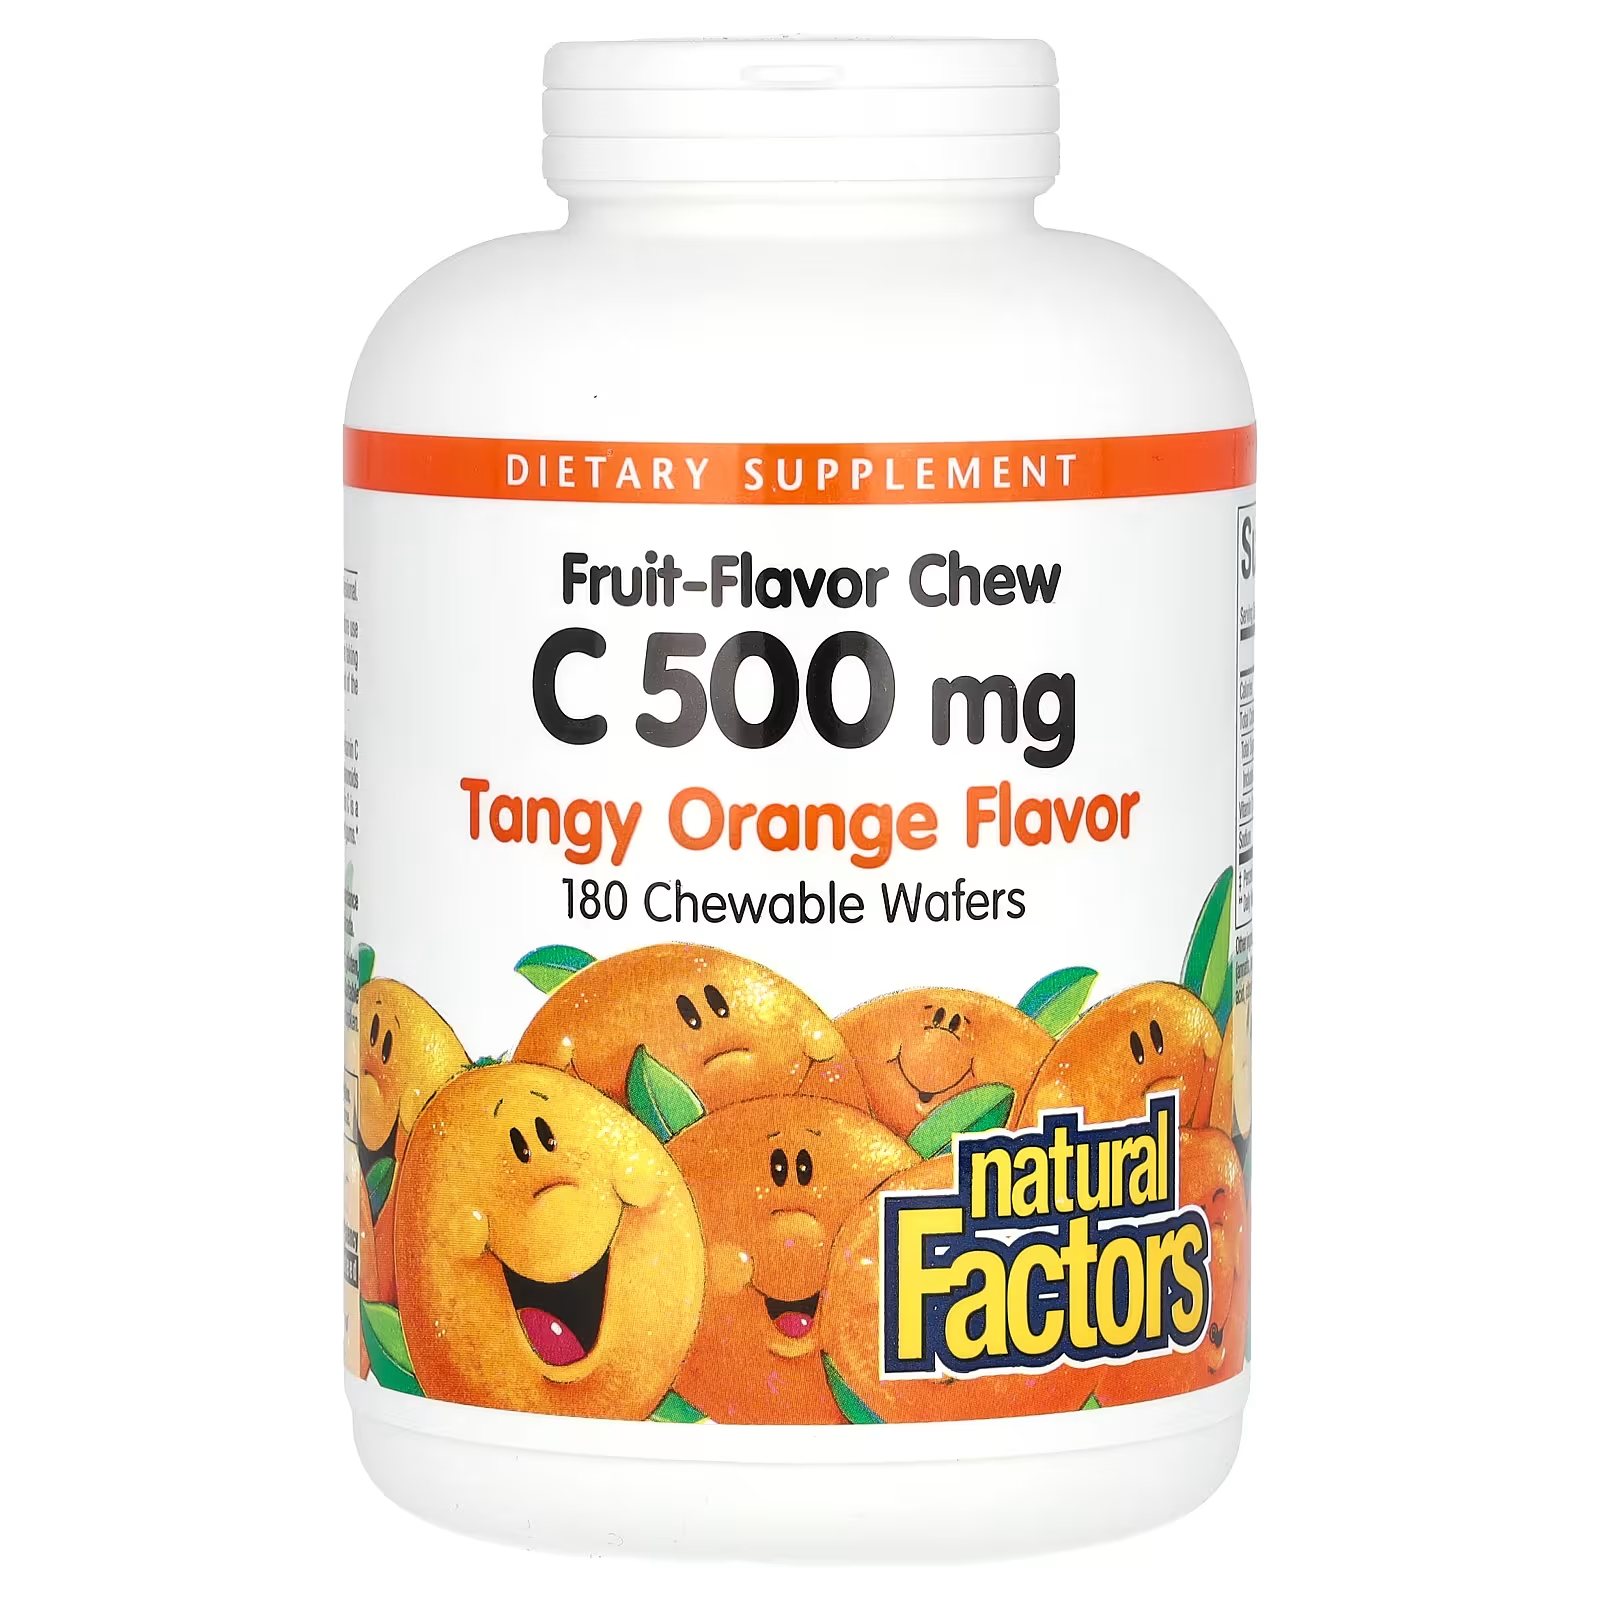 Витамин С Natural Factors с фруктовым вкусом, апельсин, 500 мг, 180 жевательных вафель emergen c жевательные таблетки с витамином c апельсиновый сок 500 мг 40 жевательных таблеток